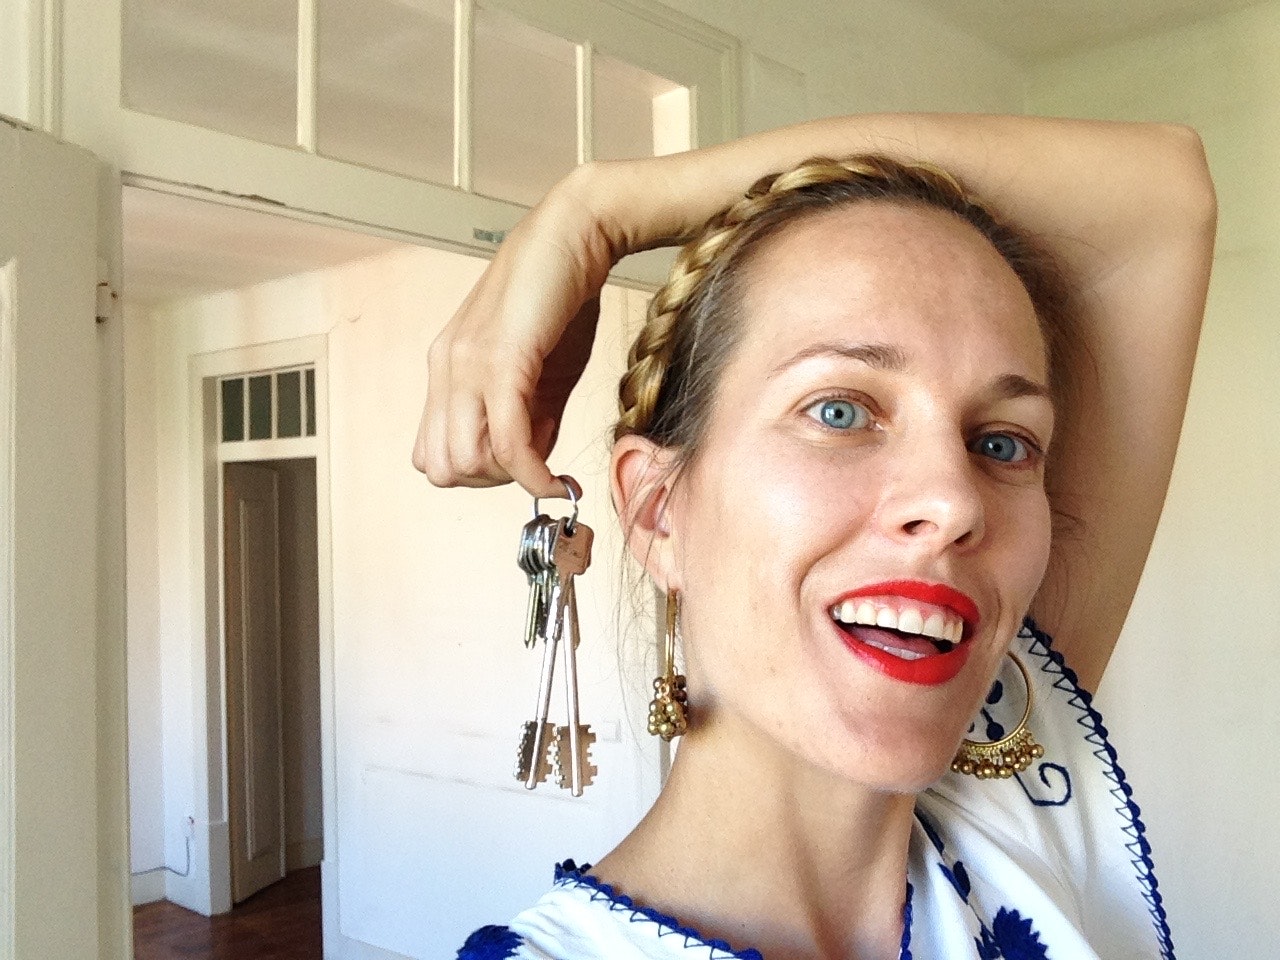 A portrait of Jenny holding a set of keys